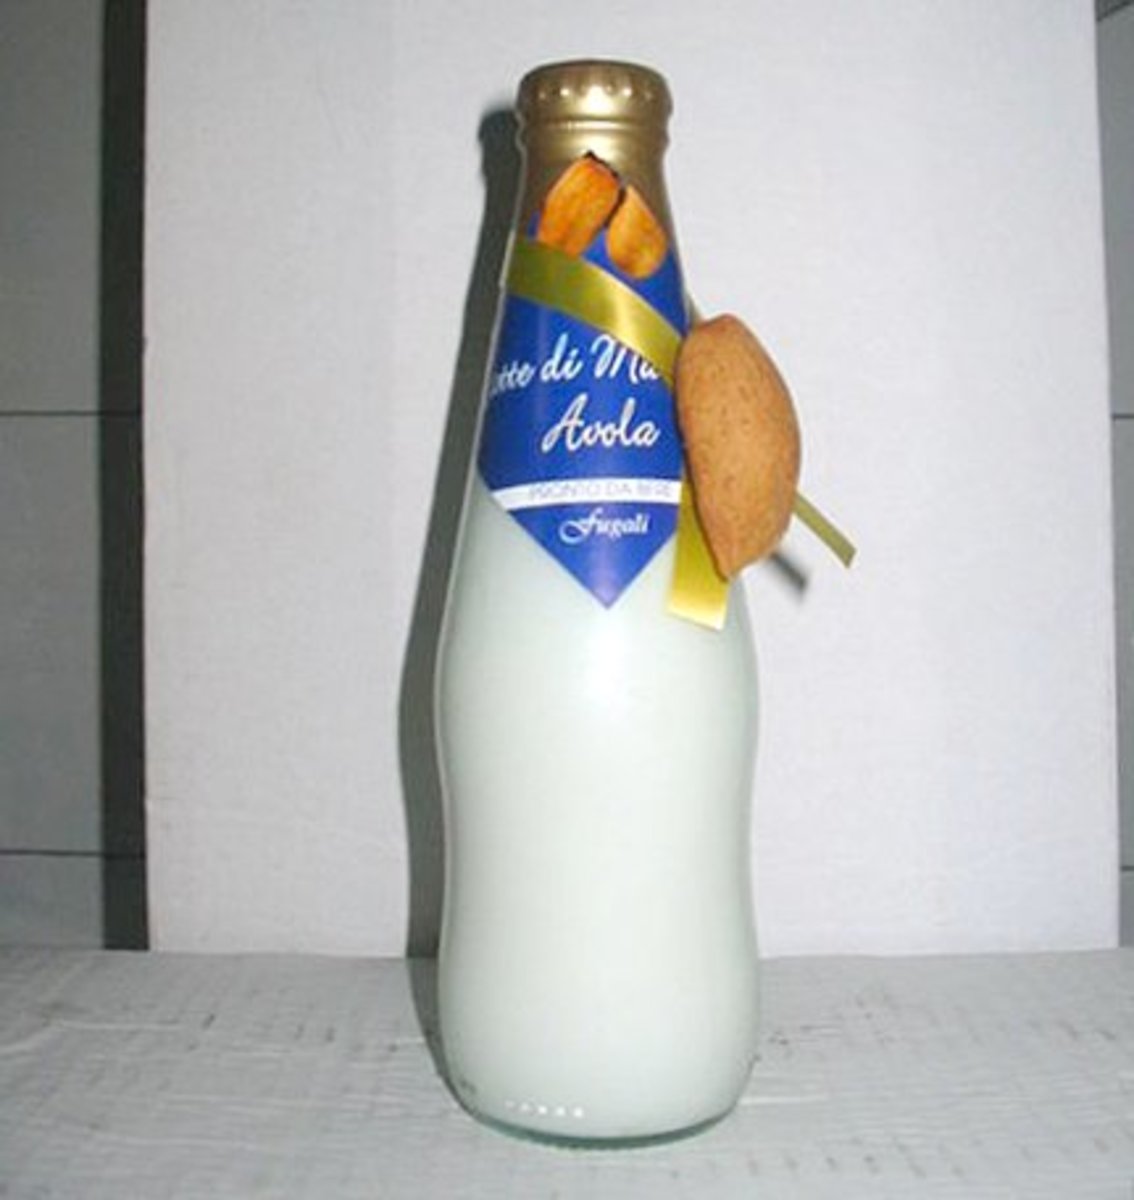 A bottle of almond milk.